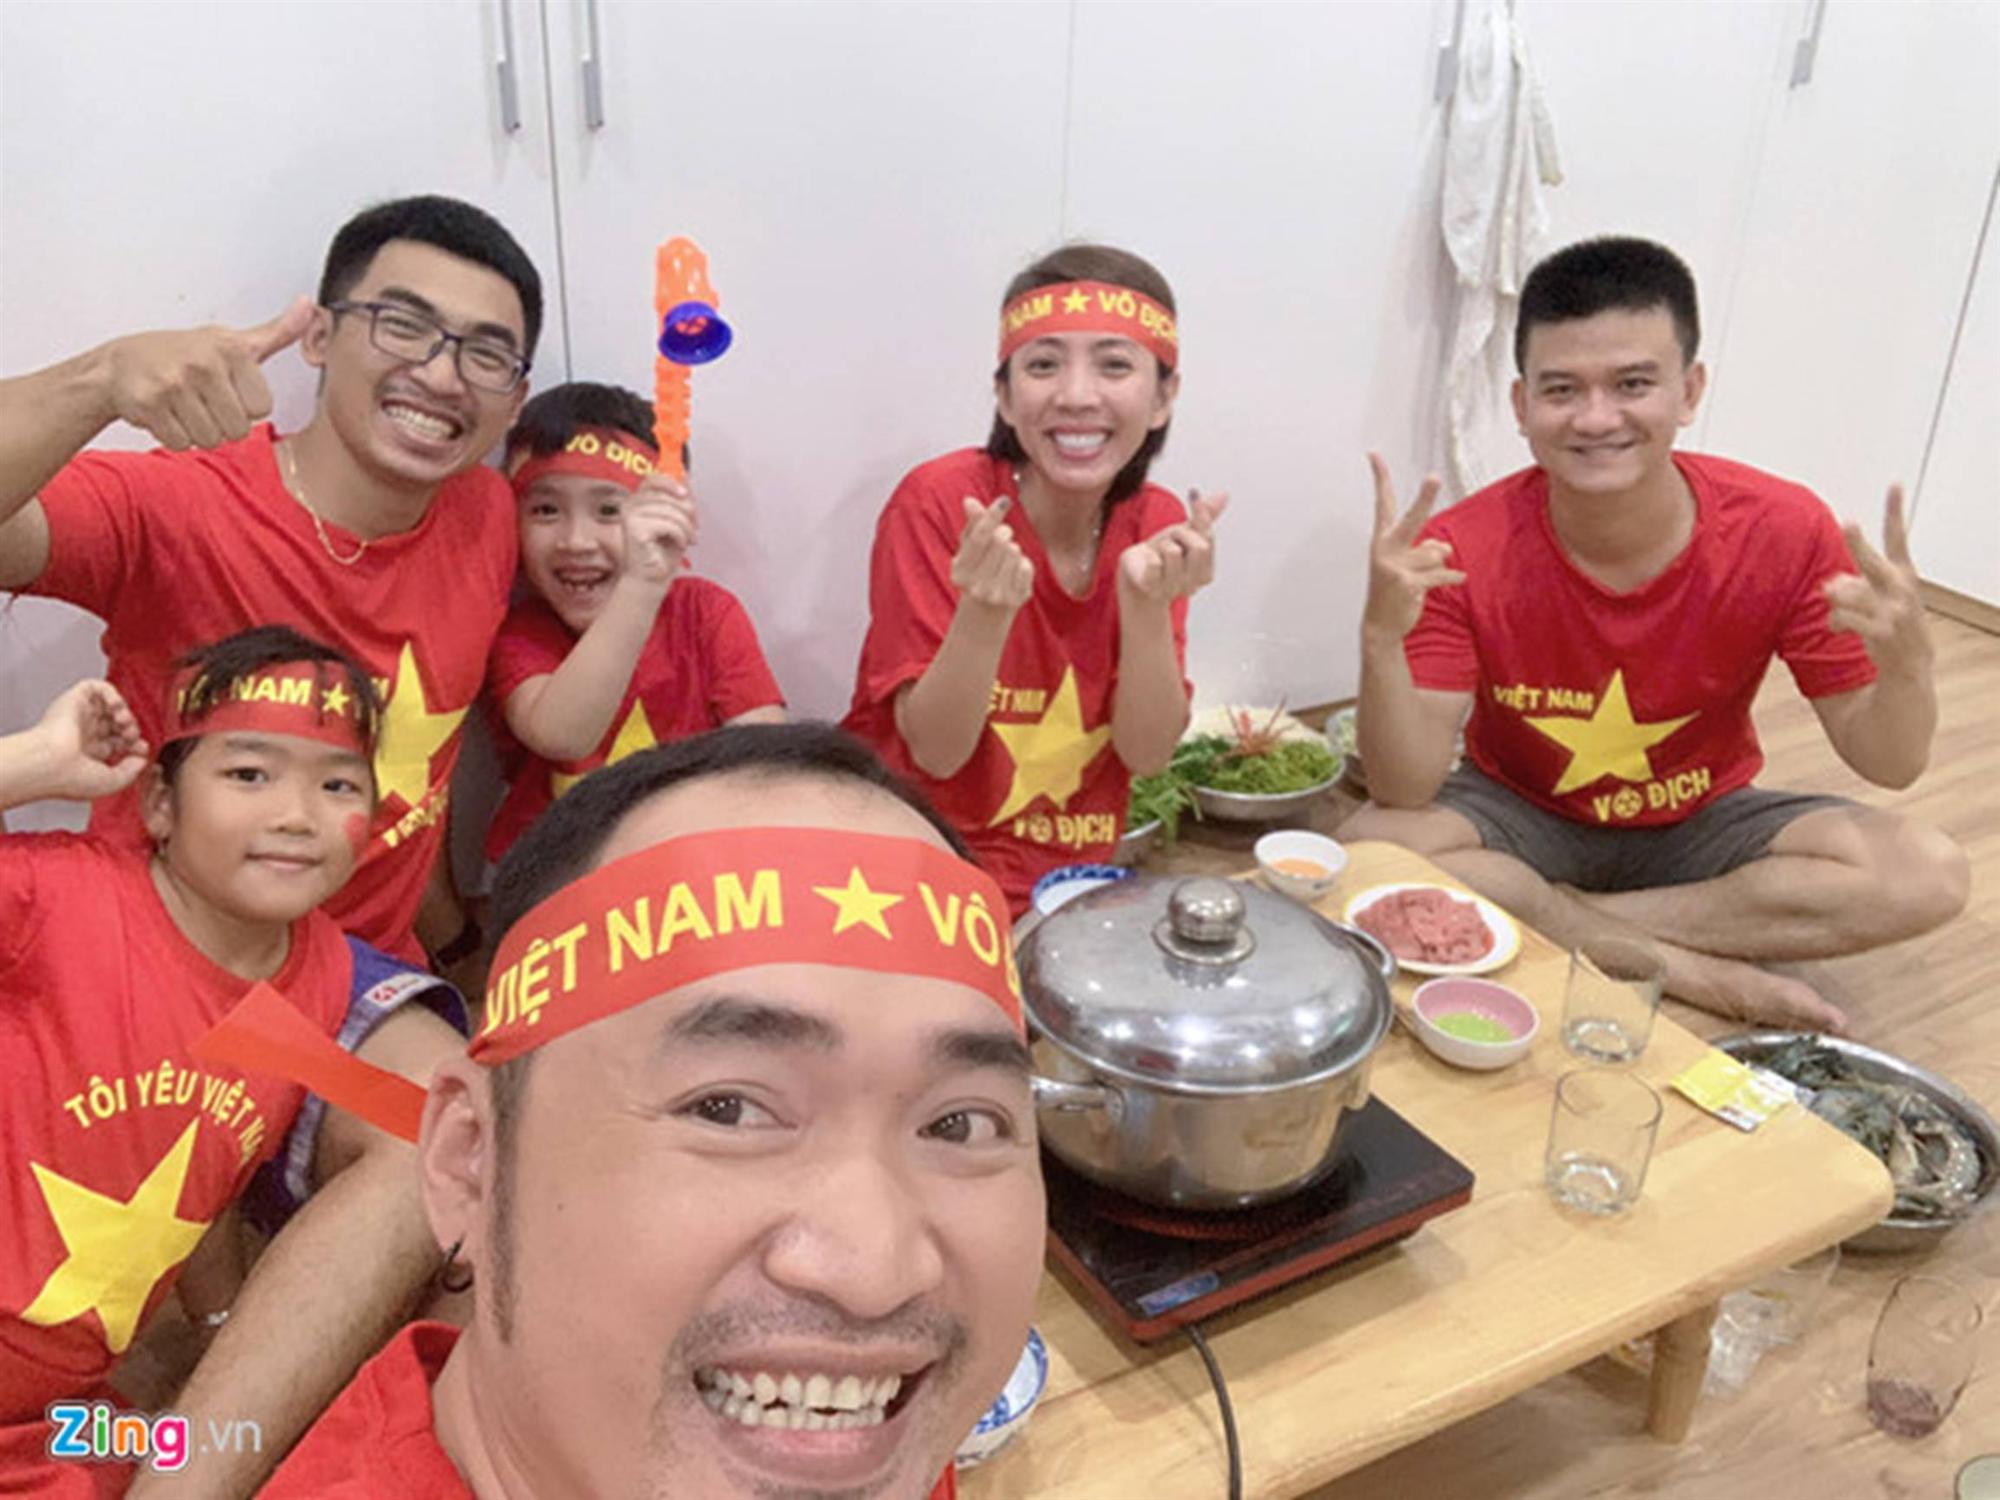 Dàn sao Việt vỡ òa khi đội tuyển Việt Nam ghi bàn thắng-4